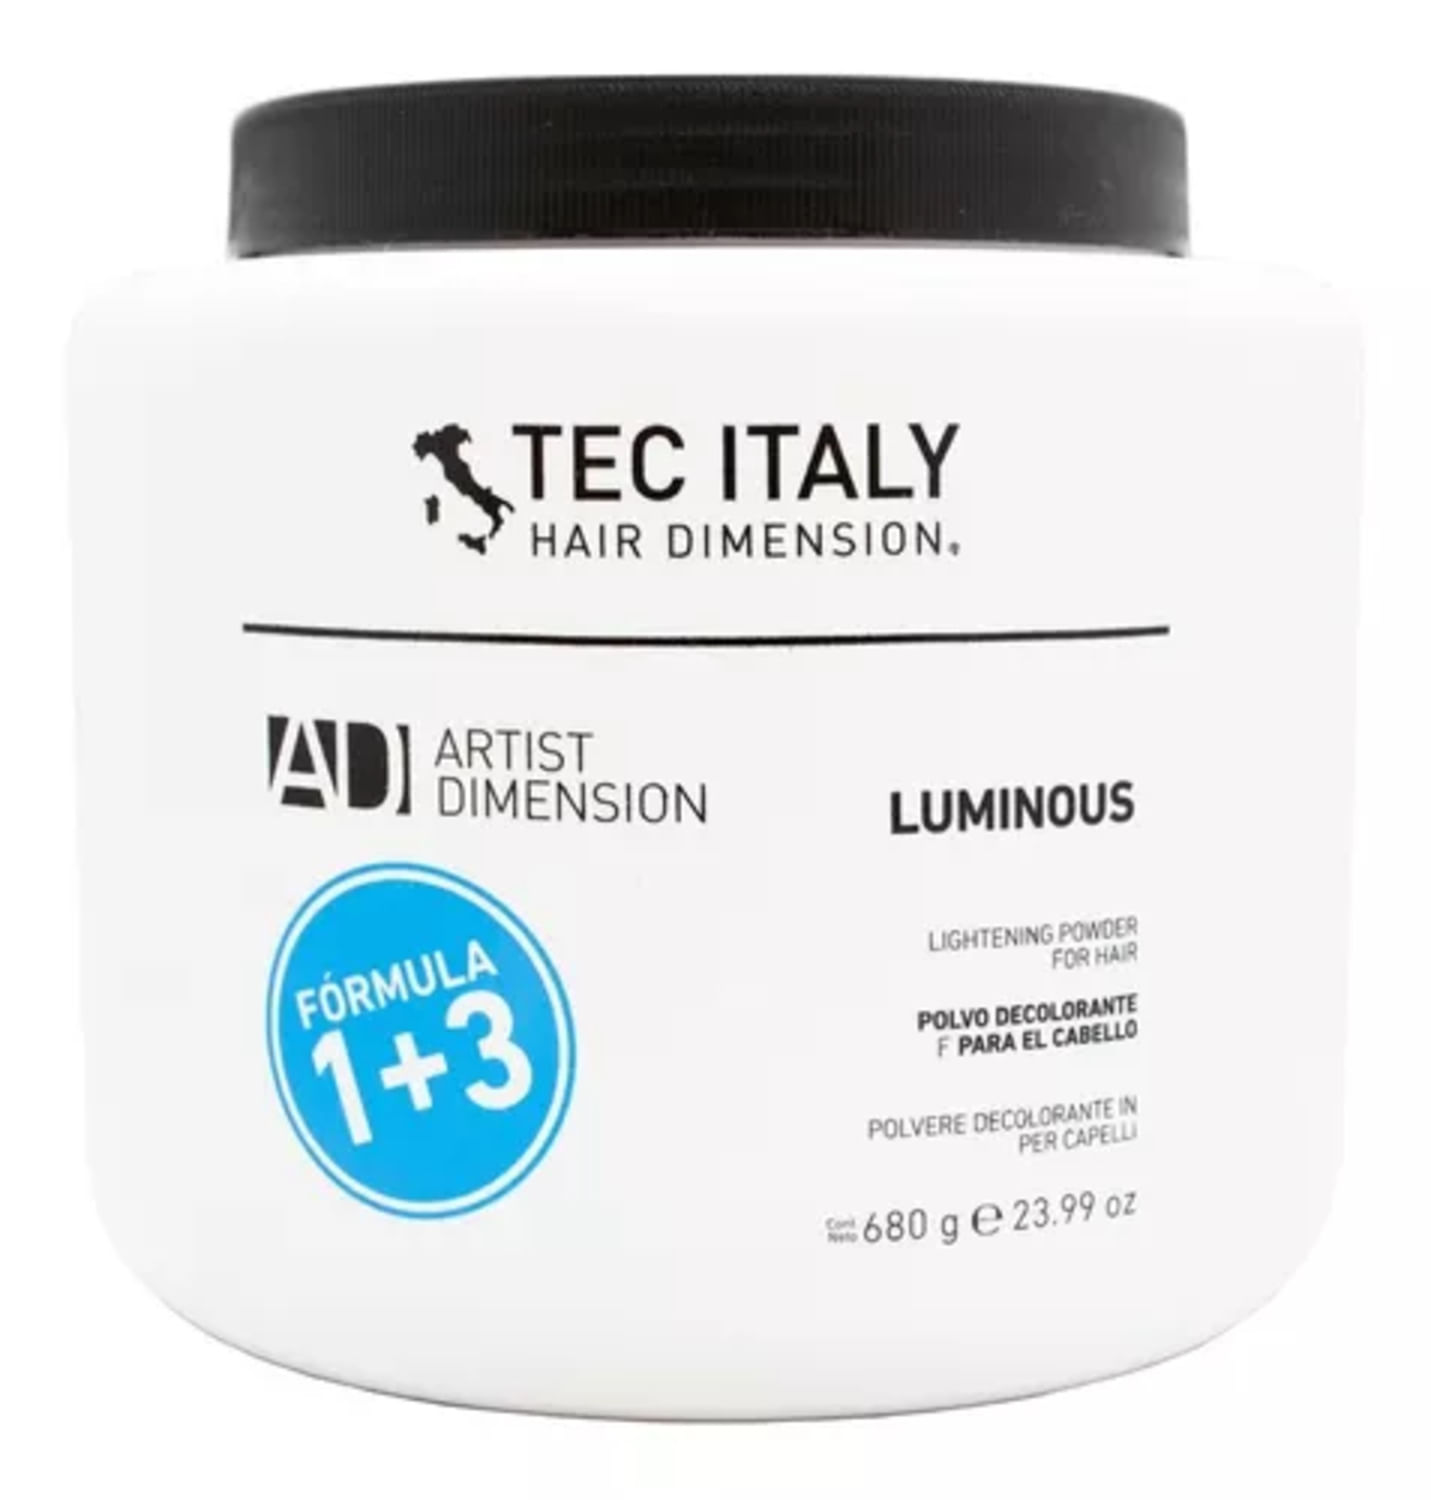 Tec Italy Luminous Polvo Decolorante Microencapsulado 680g - MORADO -  Morado, Tienda de belleza online